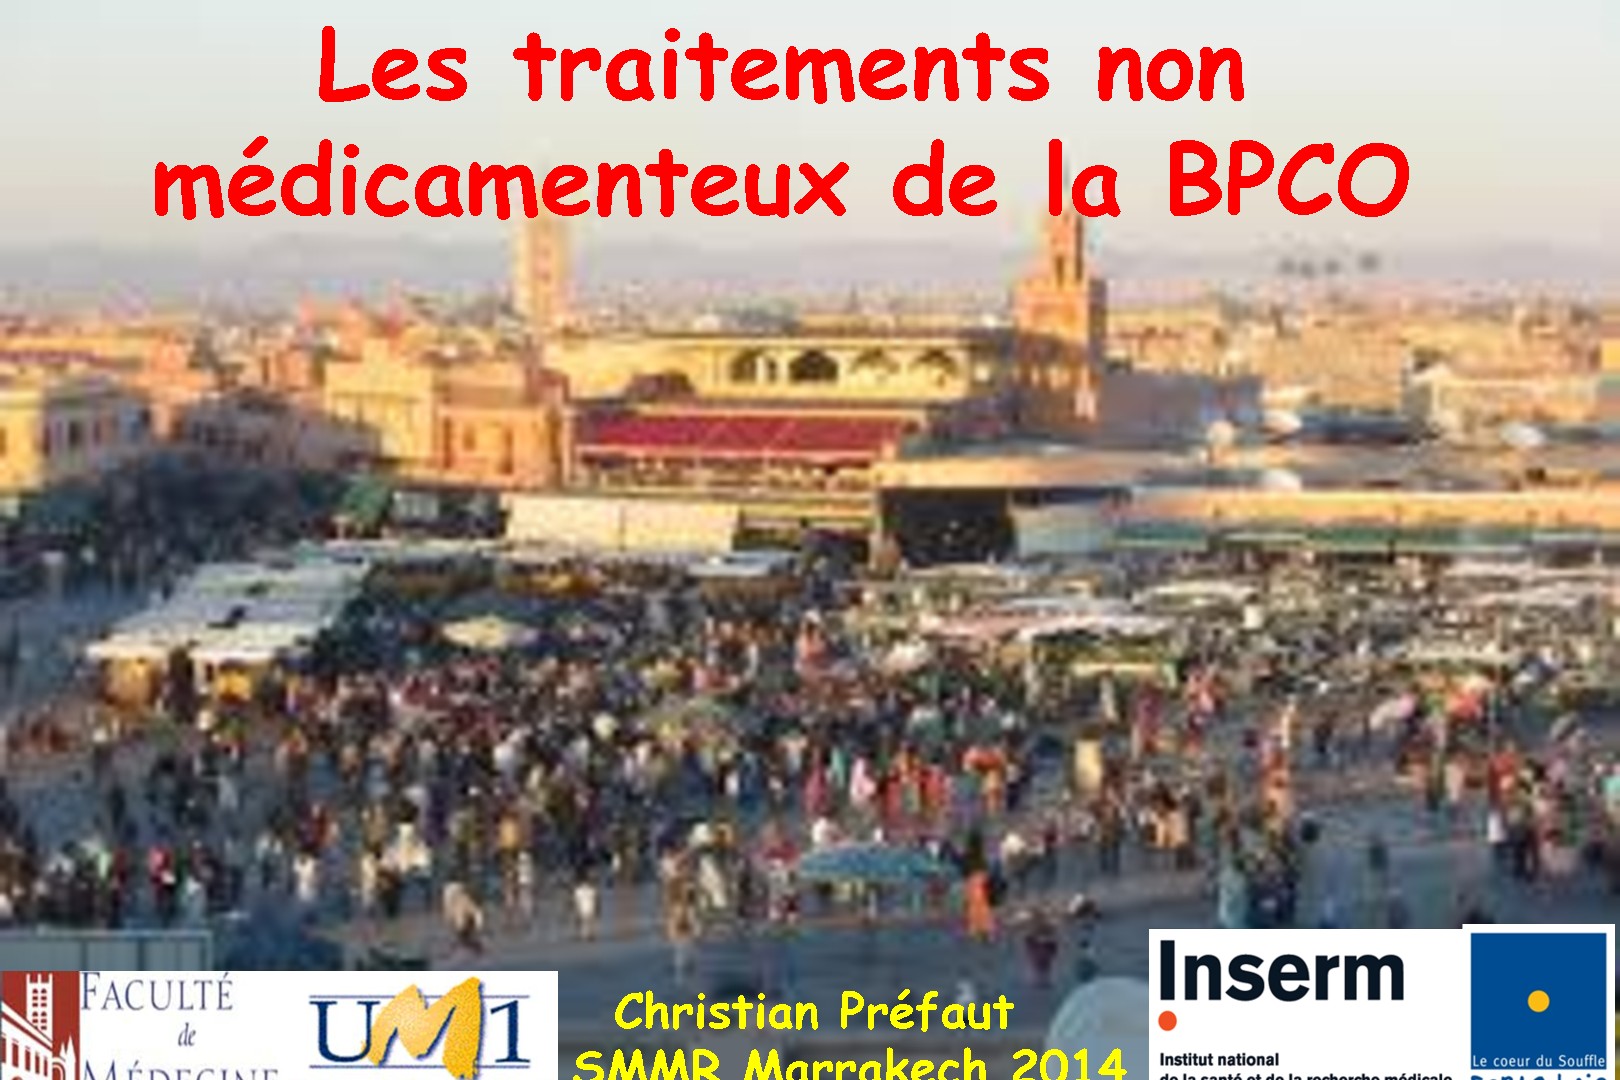 Les traitements non médicamenteux de la BPCO. Christian Préfaut